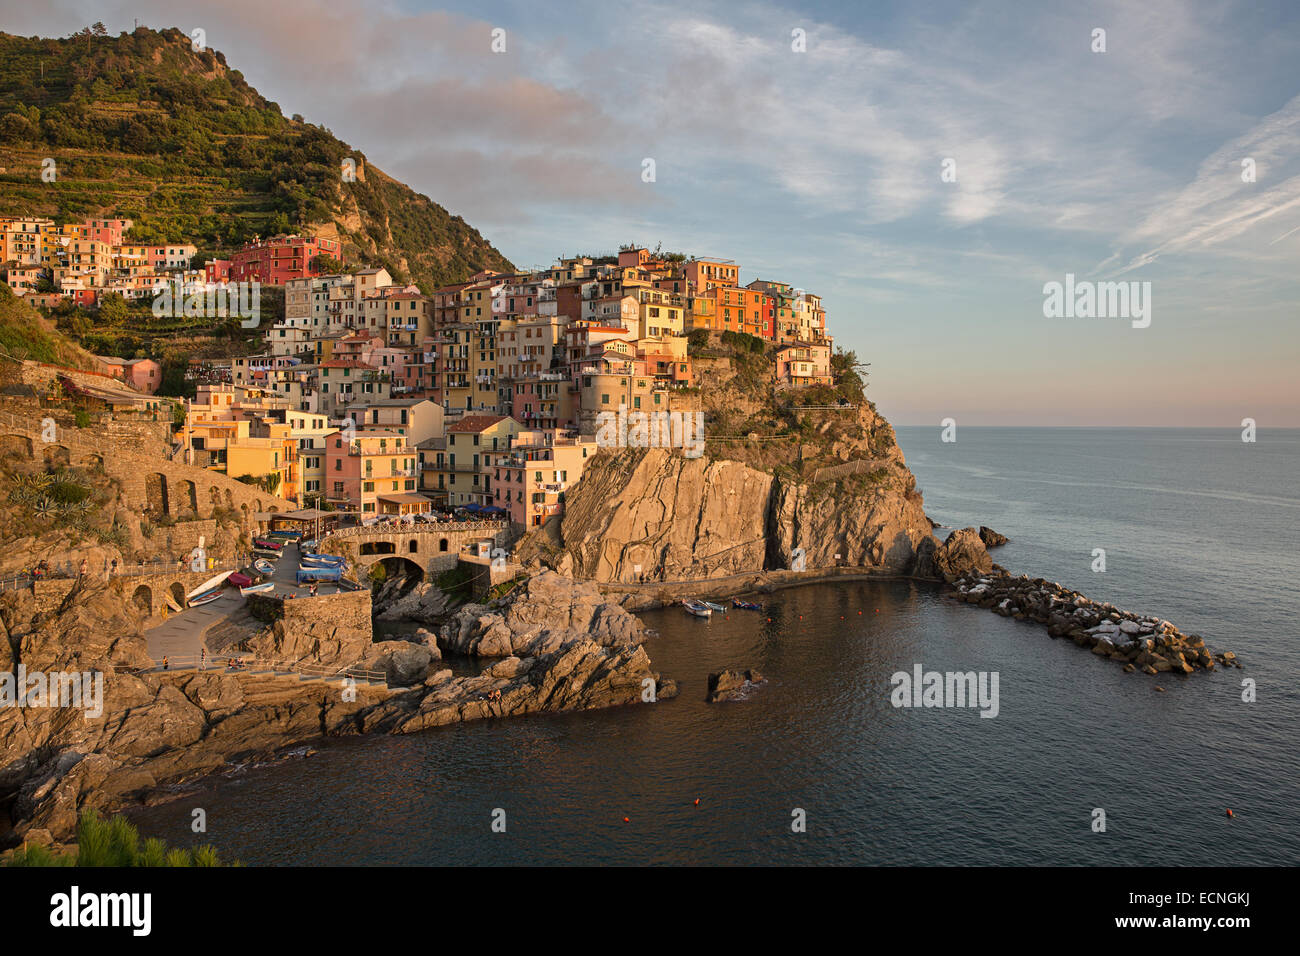 La ciudad de Manarola en Cinque Terre, Italia Foto de stock